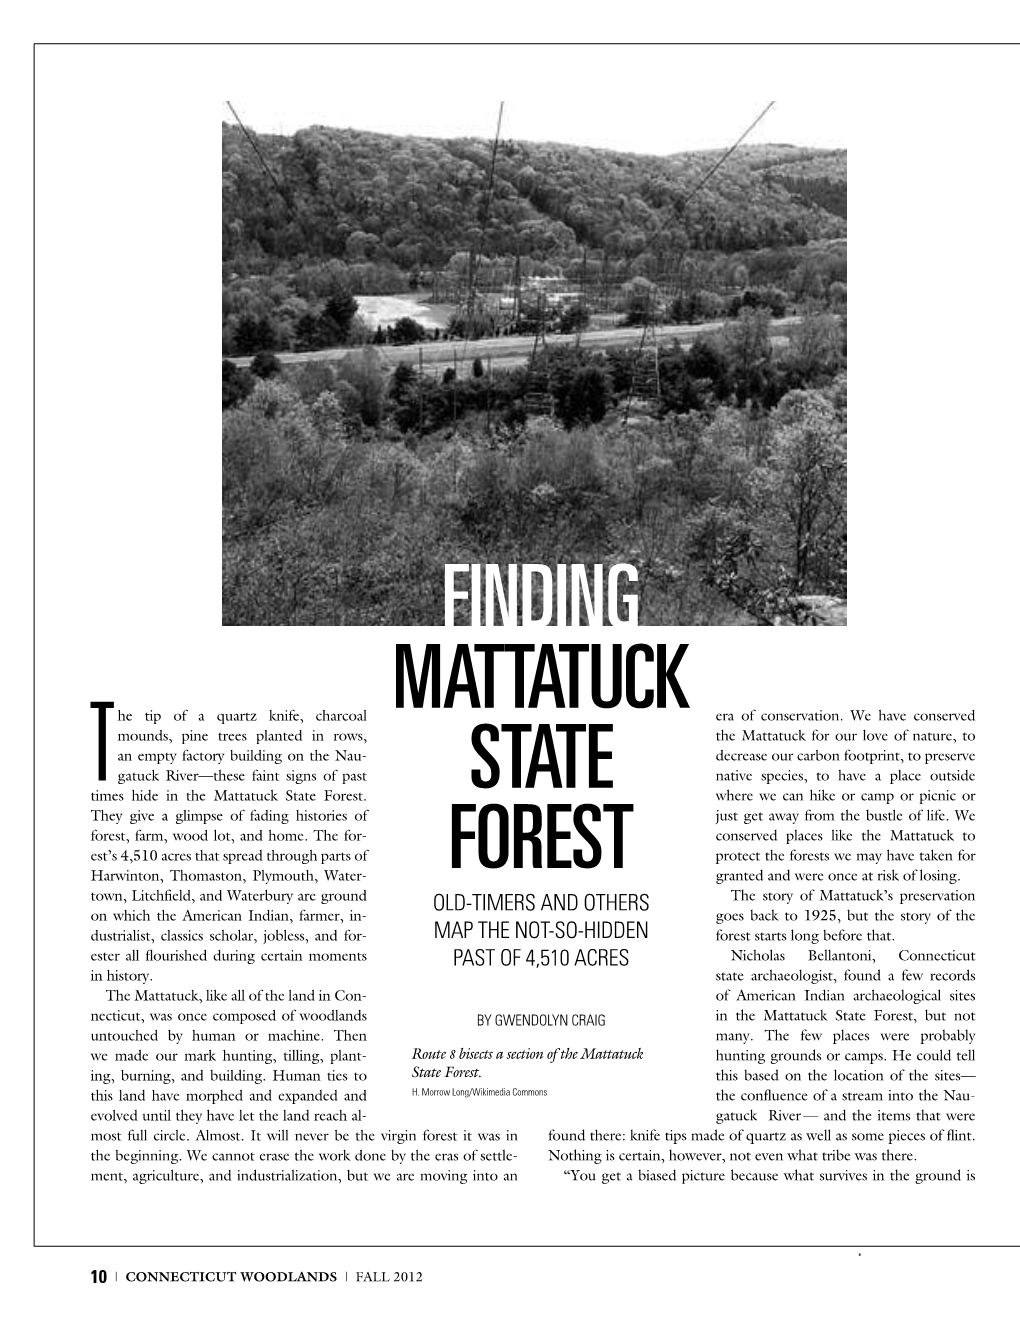 Finding Mattatuck State Forest